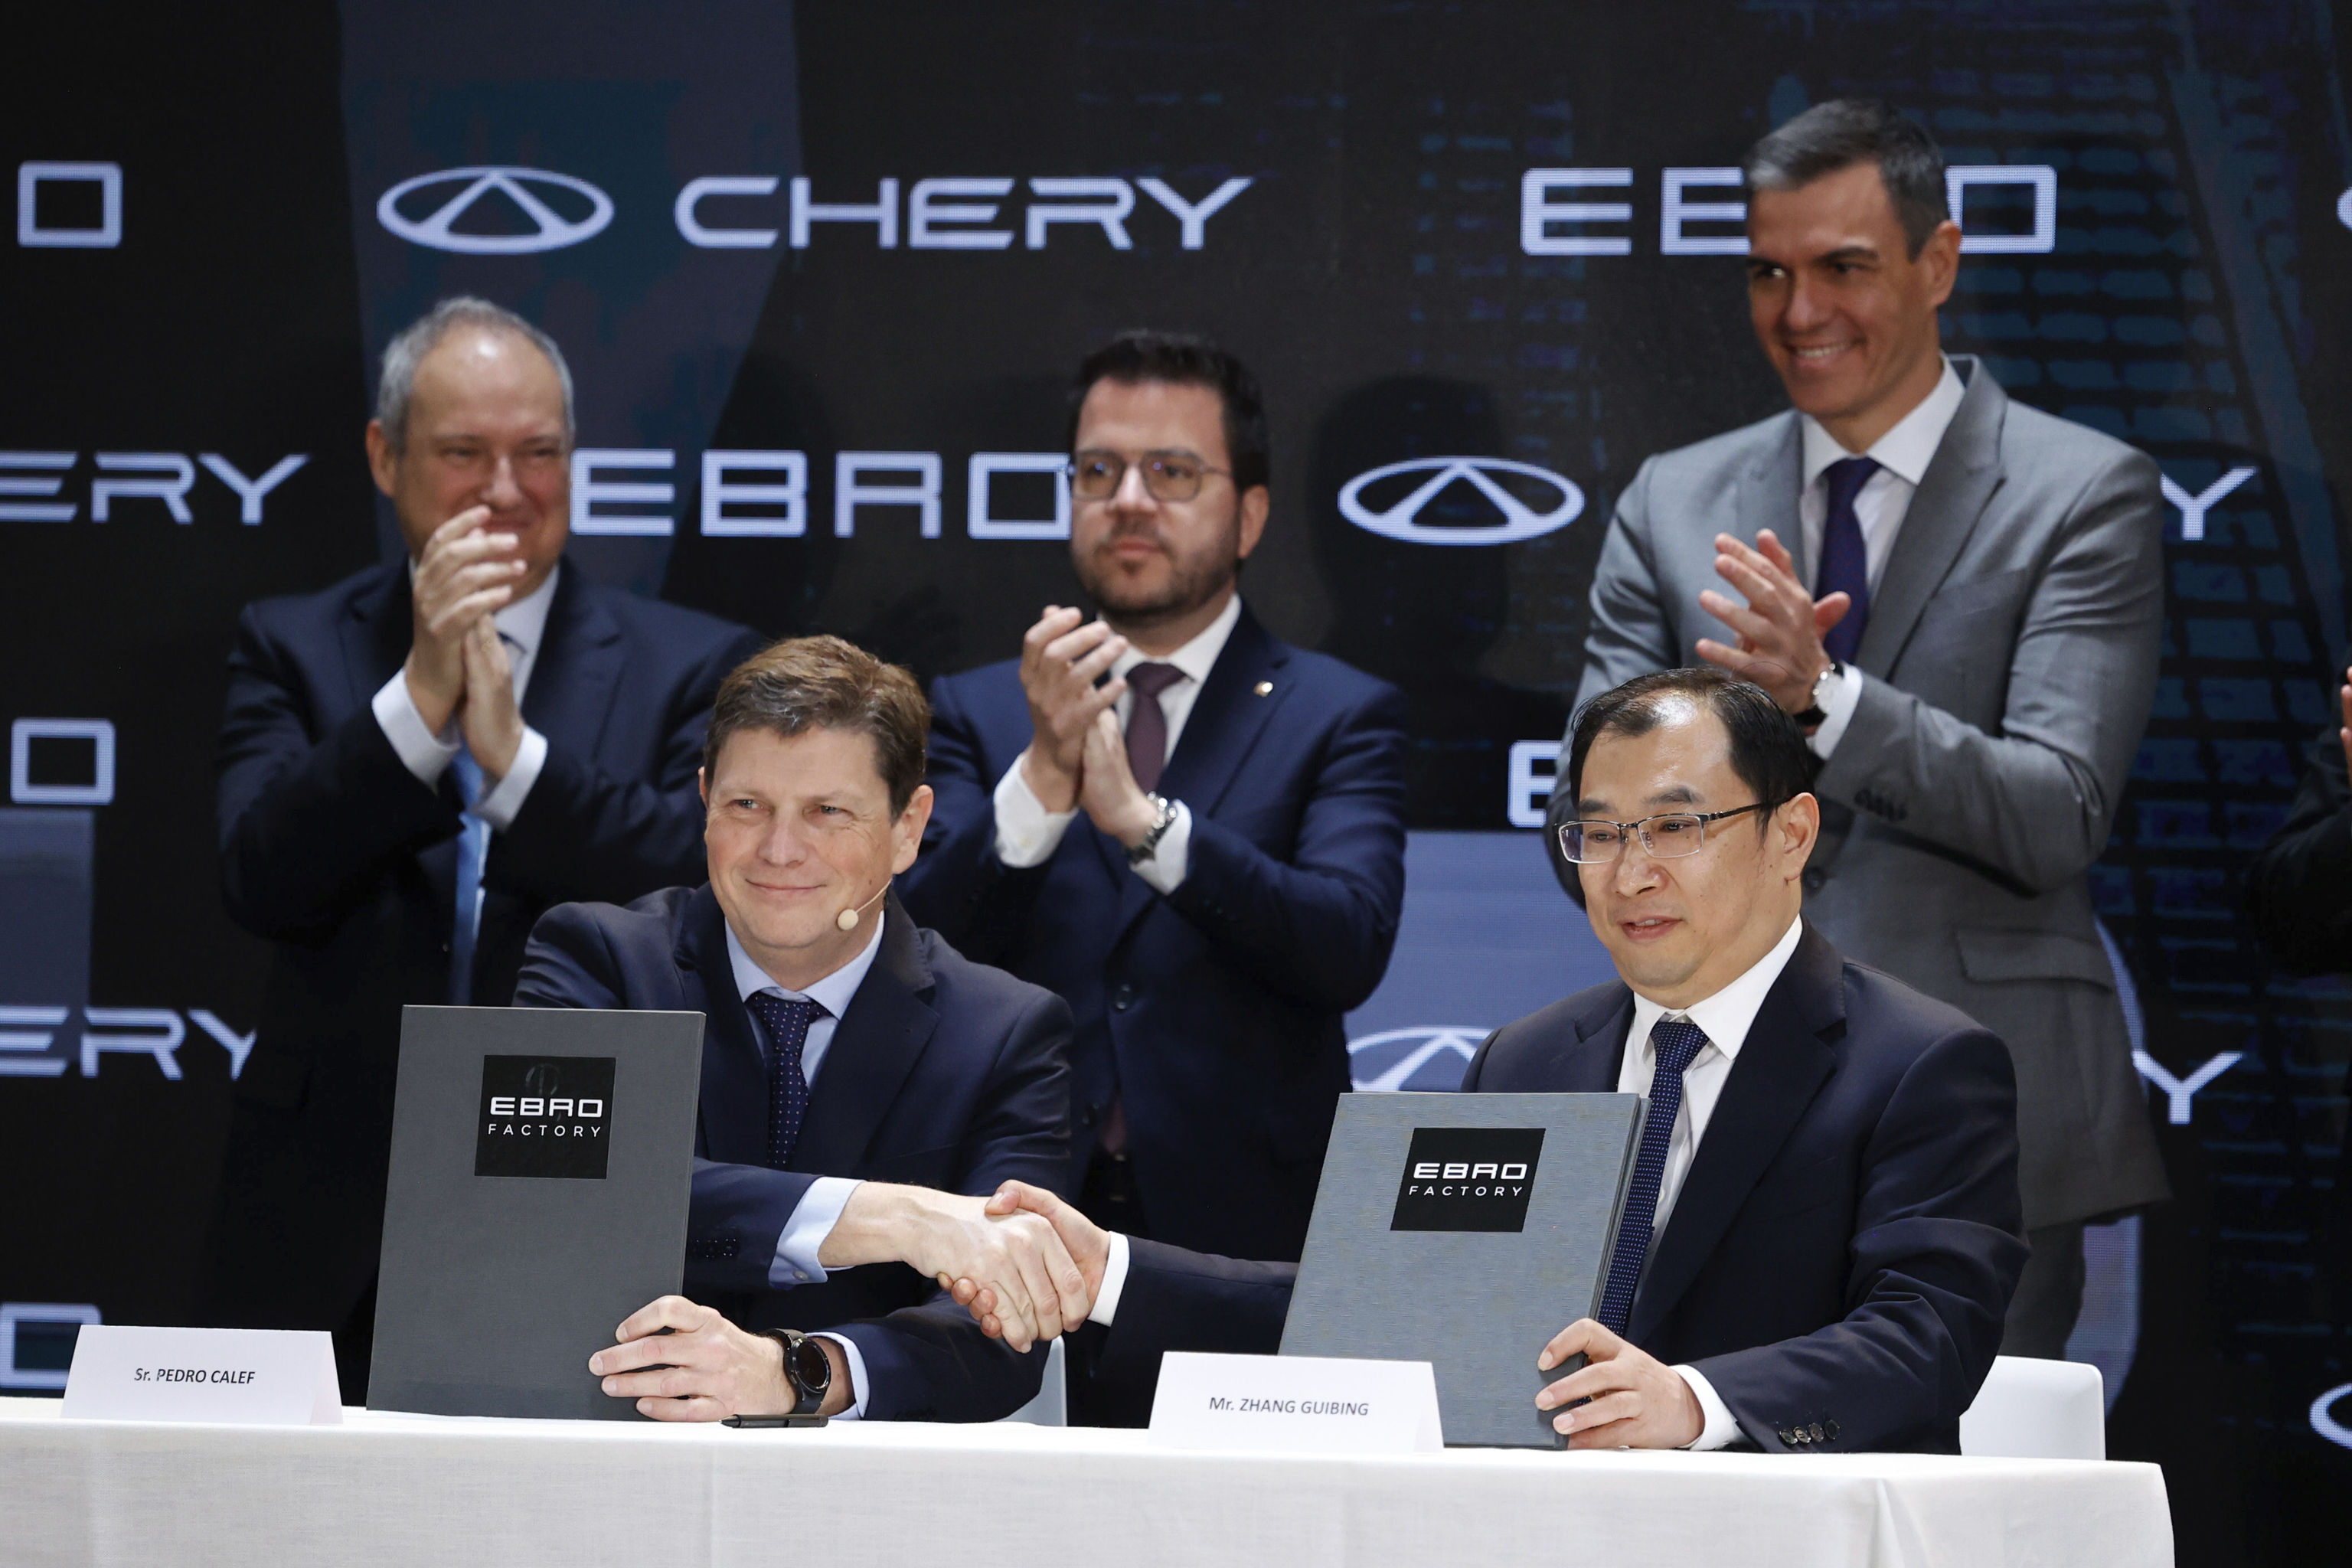 La china Chery y Ebro producirán 150.000 automóviles en Barcelona en 2029 y crearán hasta 1.250 empleos